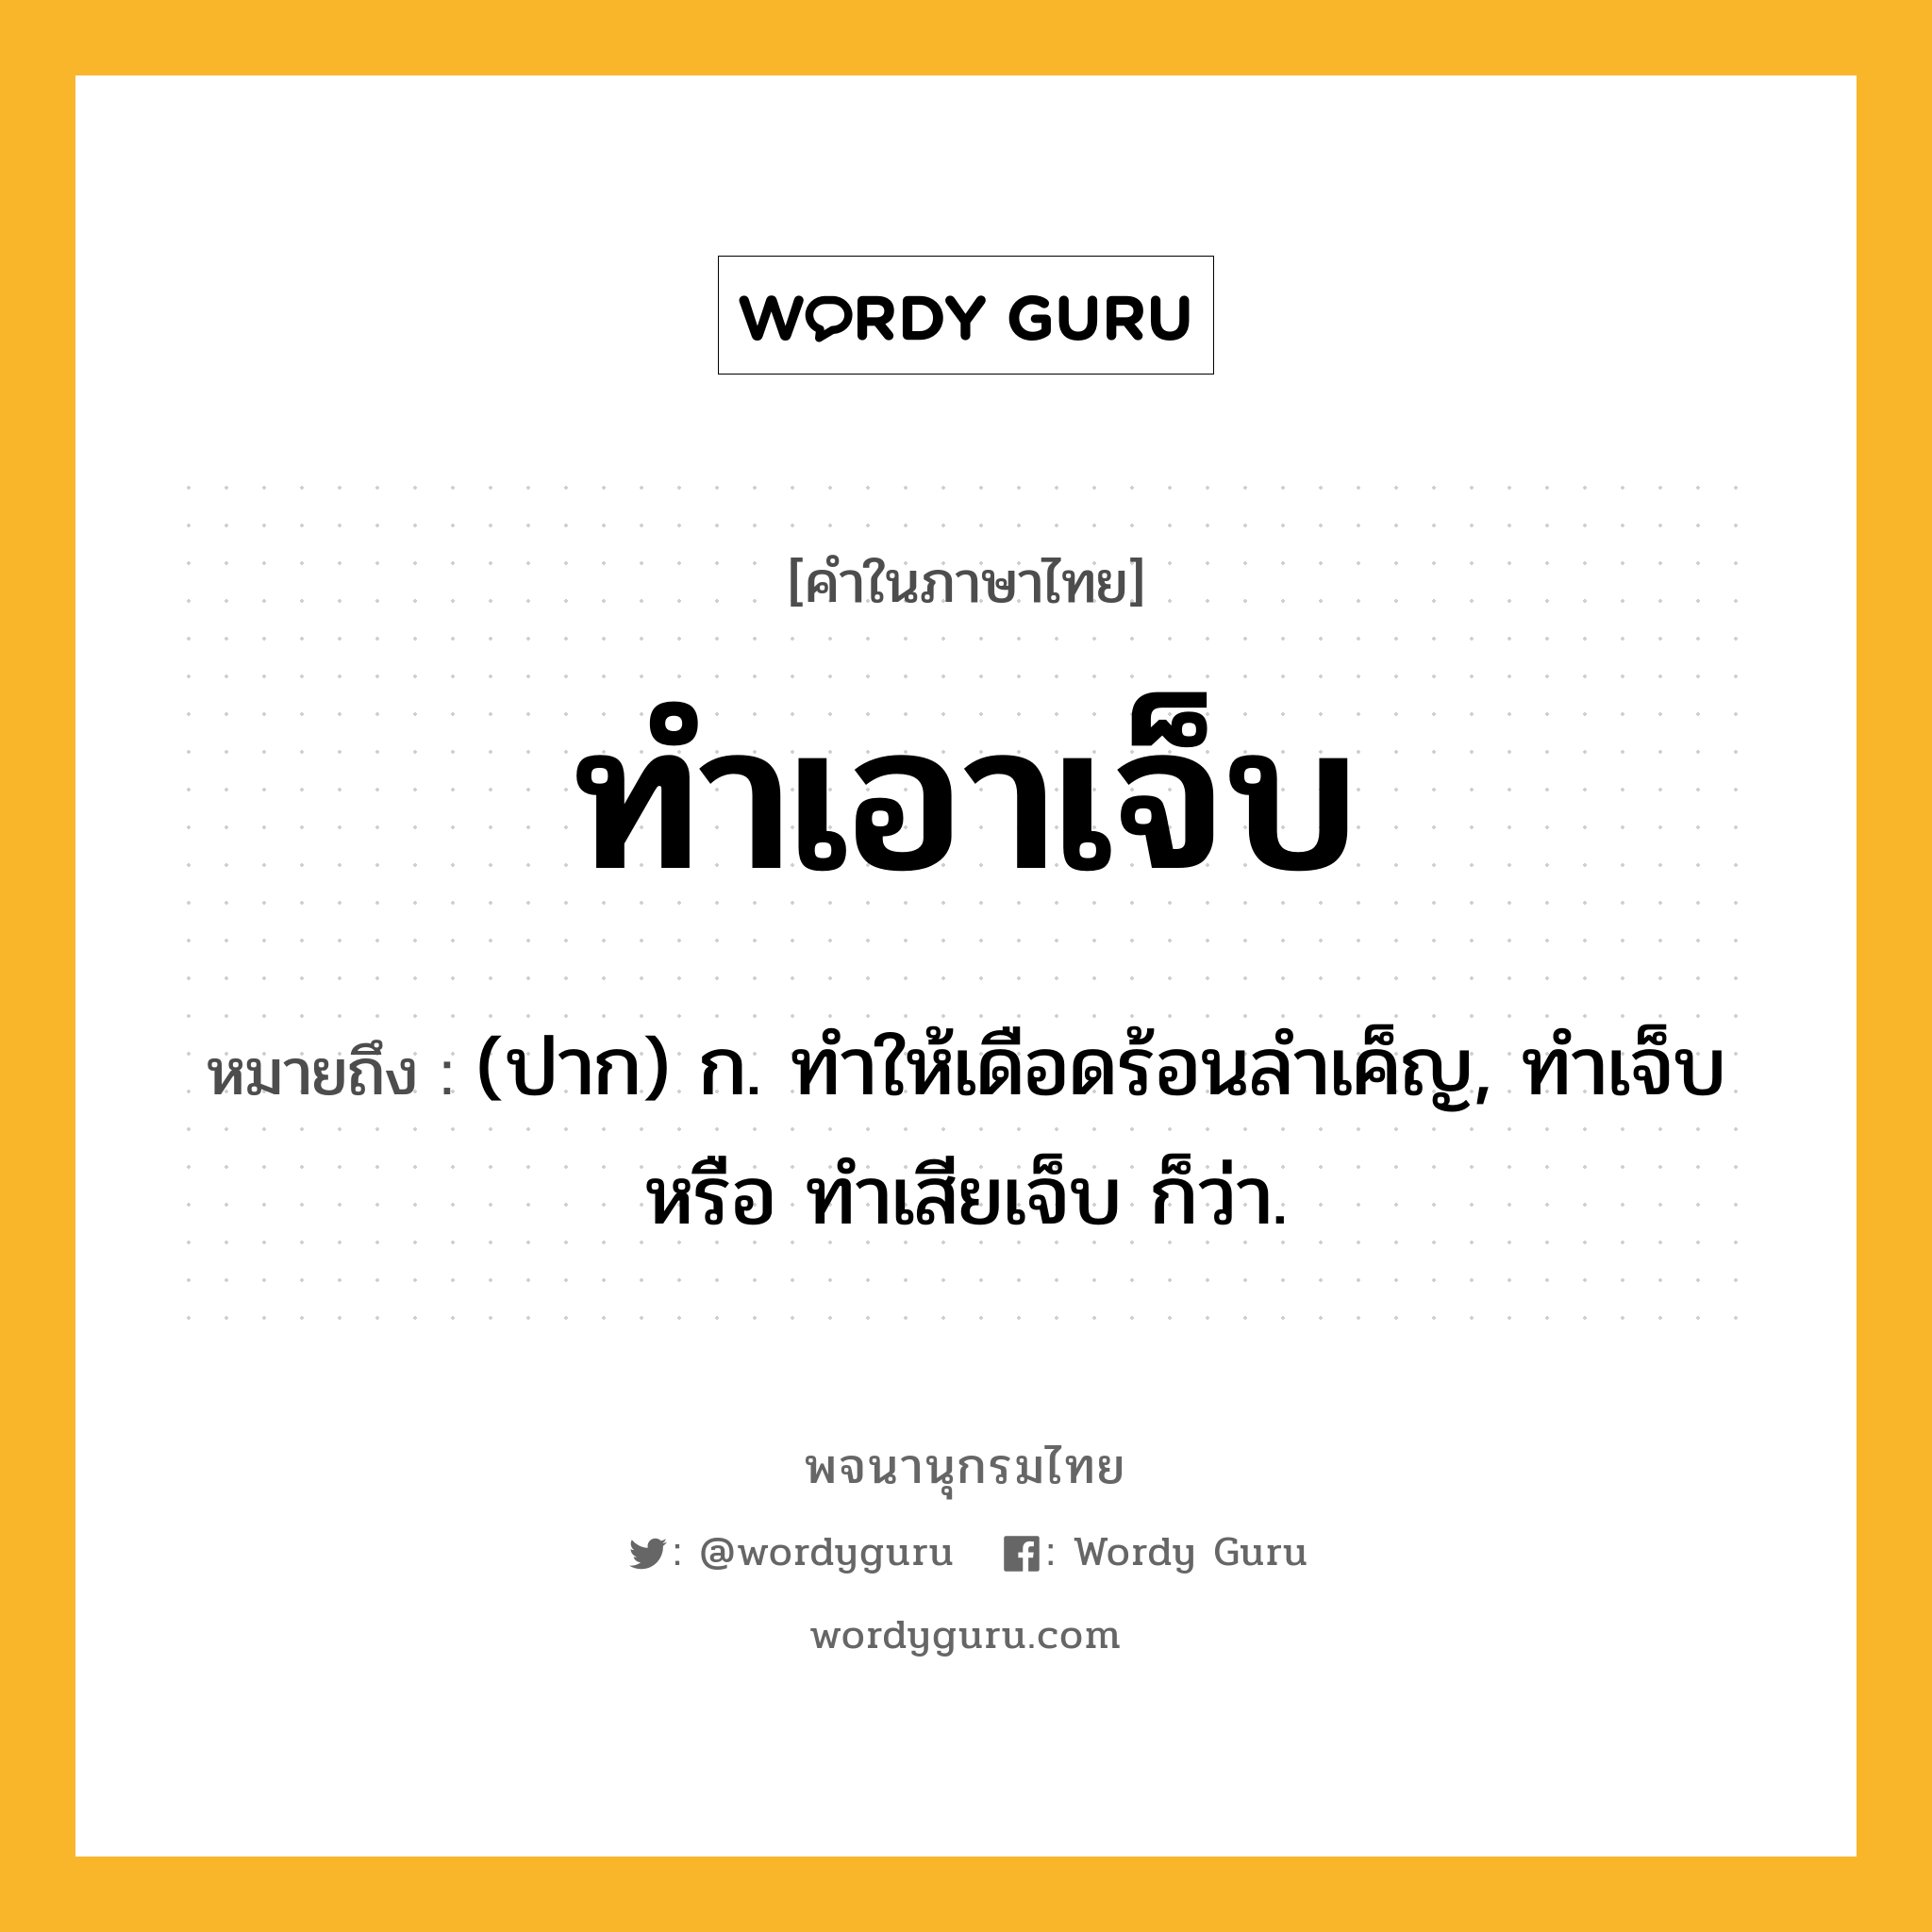 ทำเอาเจ็บ ความหมาย หมายถึงอะไร?, คำในภาษาไทย ทำเอาเจ็บ หมายถึง (ปาก) ก. ทำให้เดือดร้อนลำเค็ญ, ทำเจ็บ หรือ ทำเสียเจ็บ ก็ว่า.